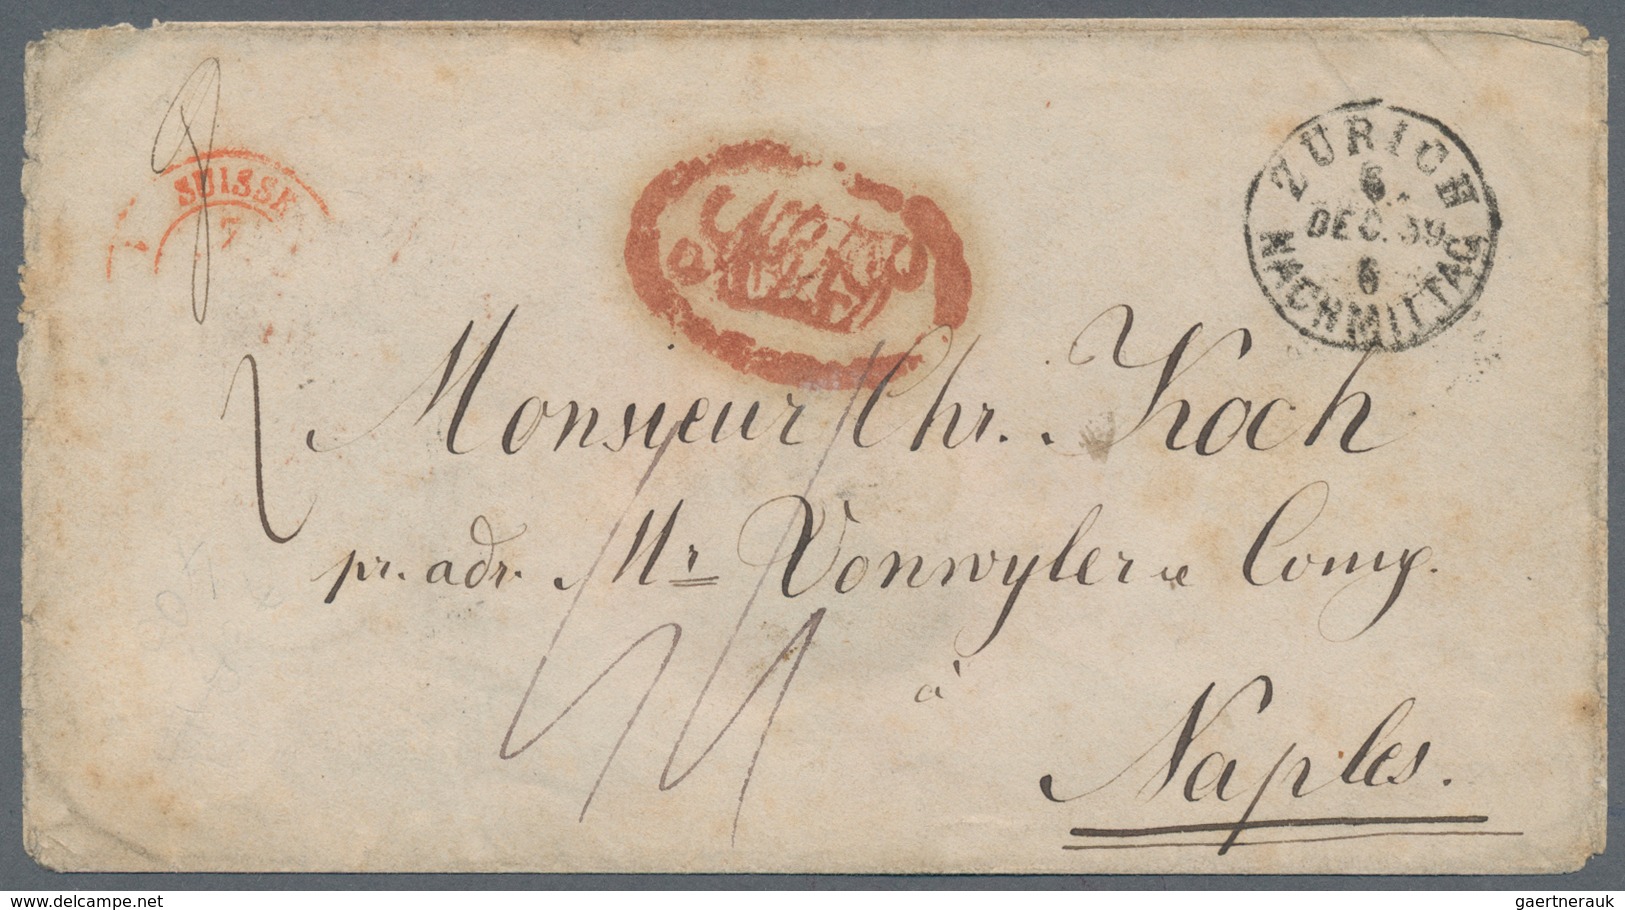 Schweiz: 1859. Unfrankierter Brief Aus Der Schweiz (Zürich 6 DEC 59) Nach Neapel. Der Brief - 8 Gr - - Neufs